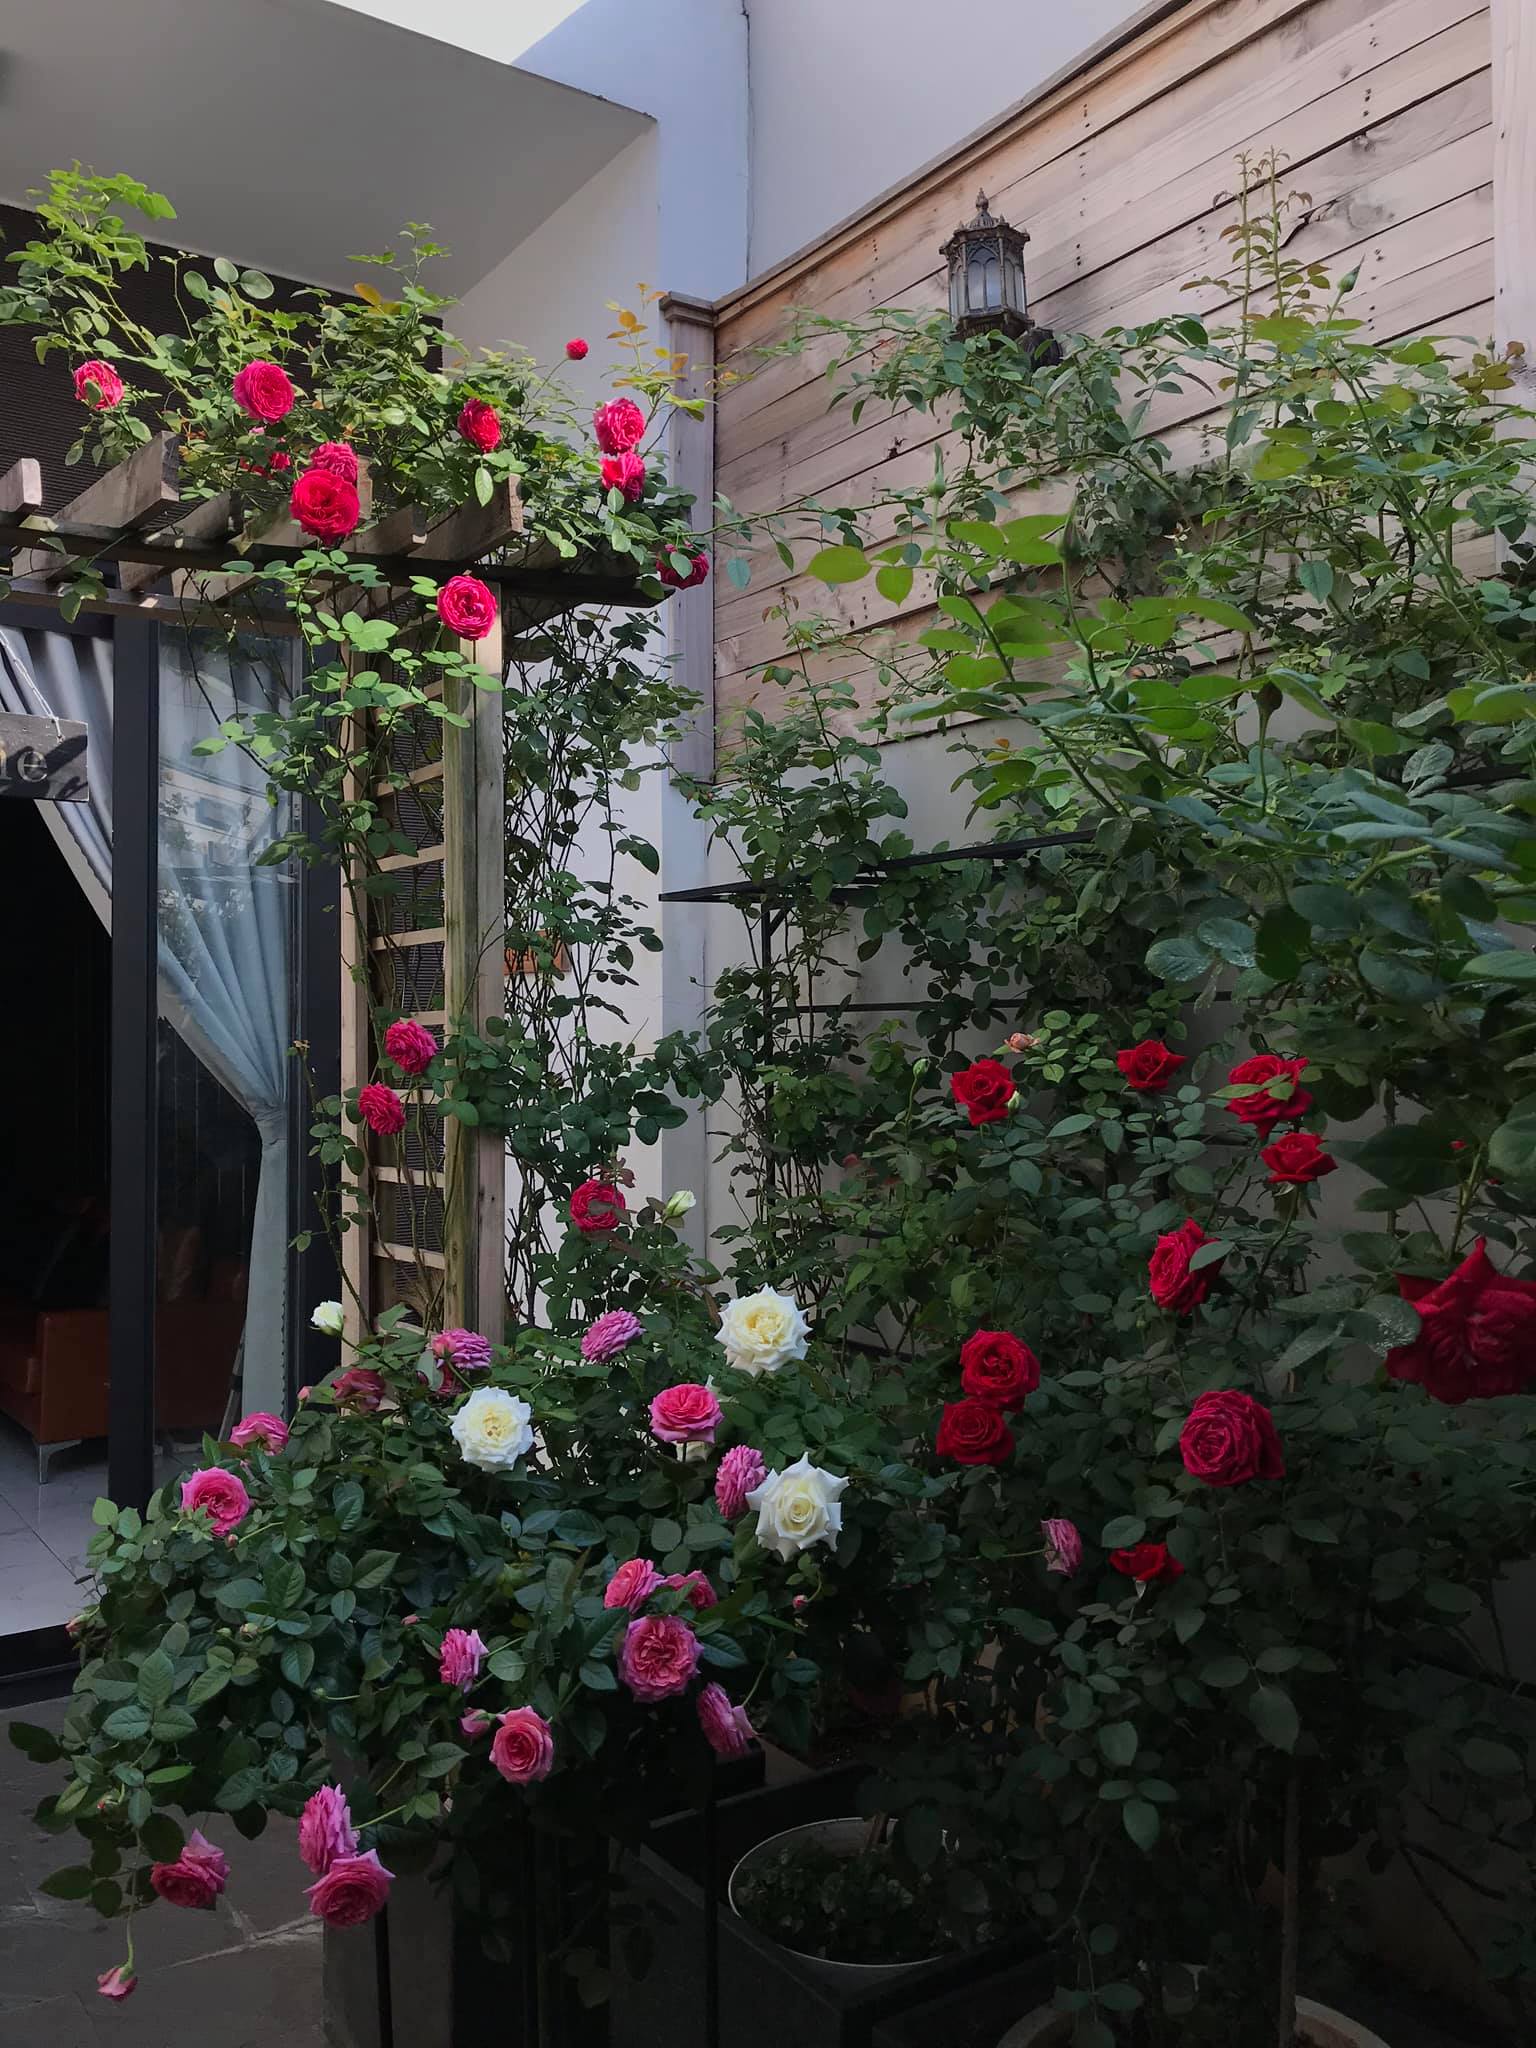 Ngôi nhà hoa hồng sẽ làm cho bạn cảm thấy thật ấm cúng và được bao quanh bởi một khung cảnh tuyệt đẹp. Hãy cùng ngắm nhìn và chiêm ngưỡng nó ngay bây giờ.